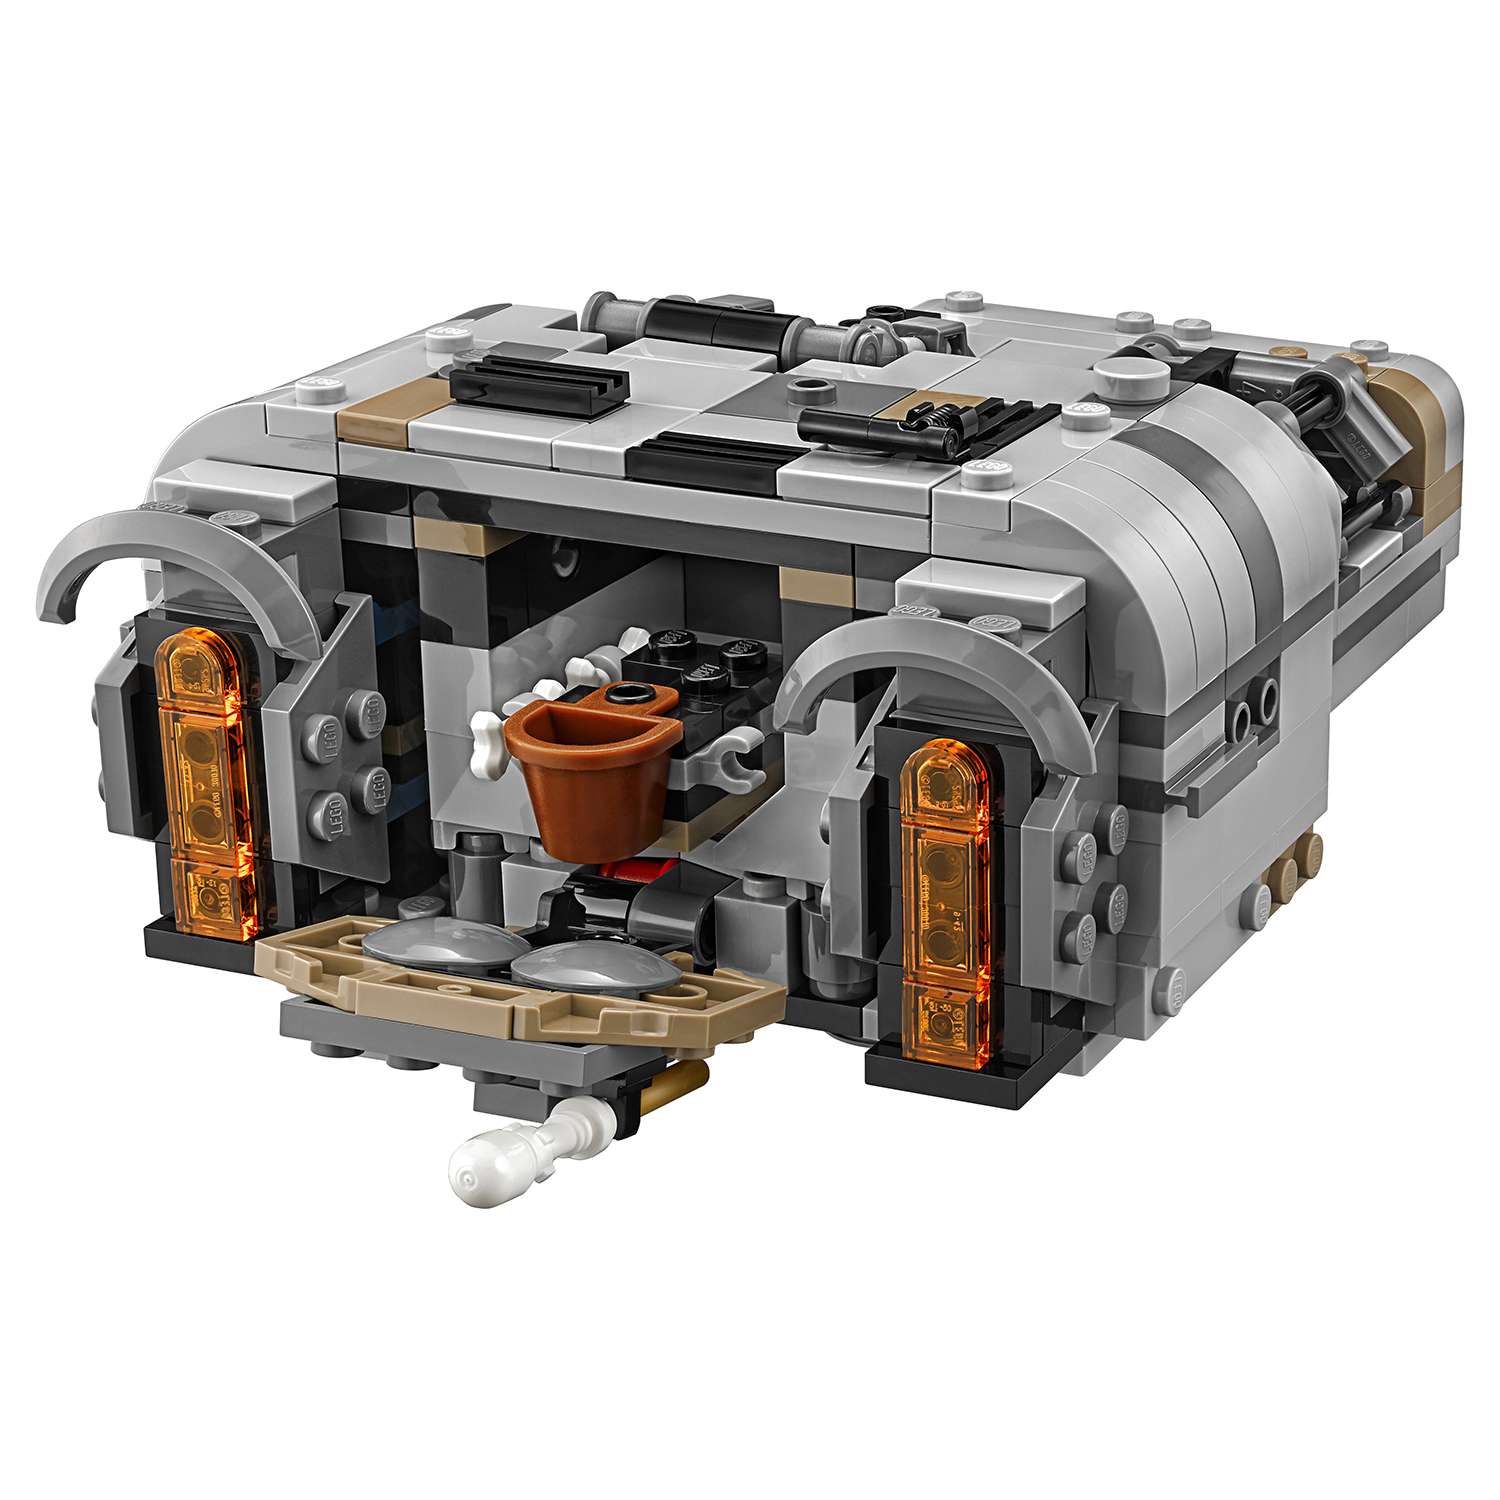 Конструктор LEGO Star Wars Спидер Молоха (75210) - фото 13